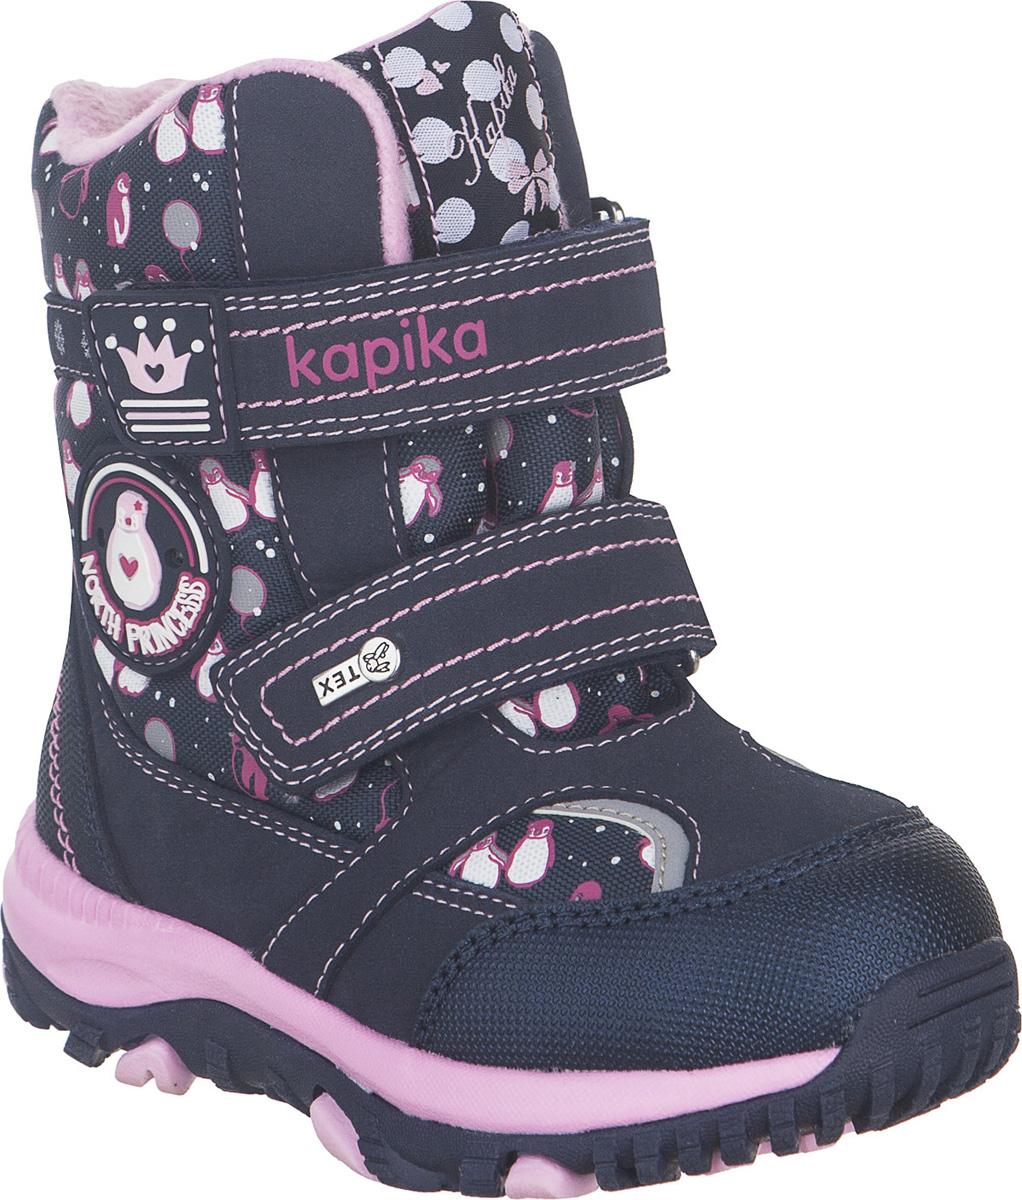 Ботинки для девочки Kapika, цвет: темно-синий. 41224-3. Размер 25